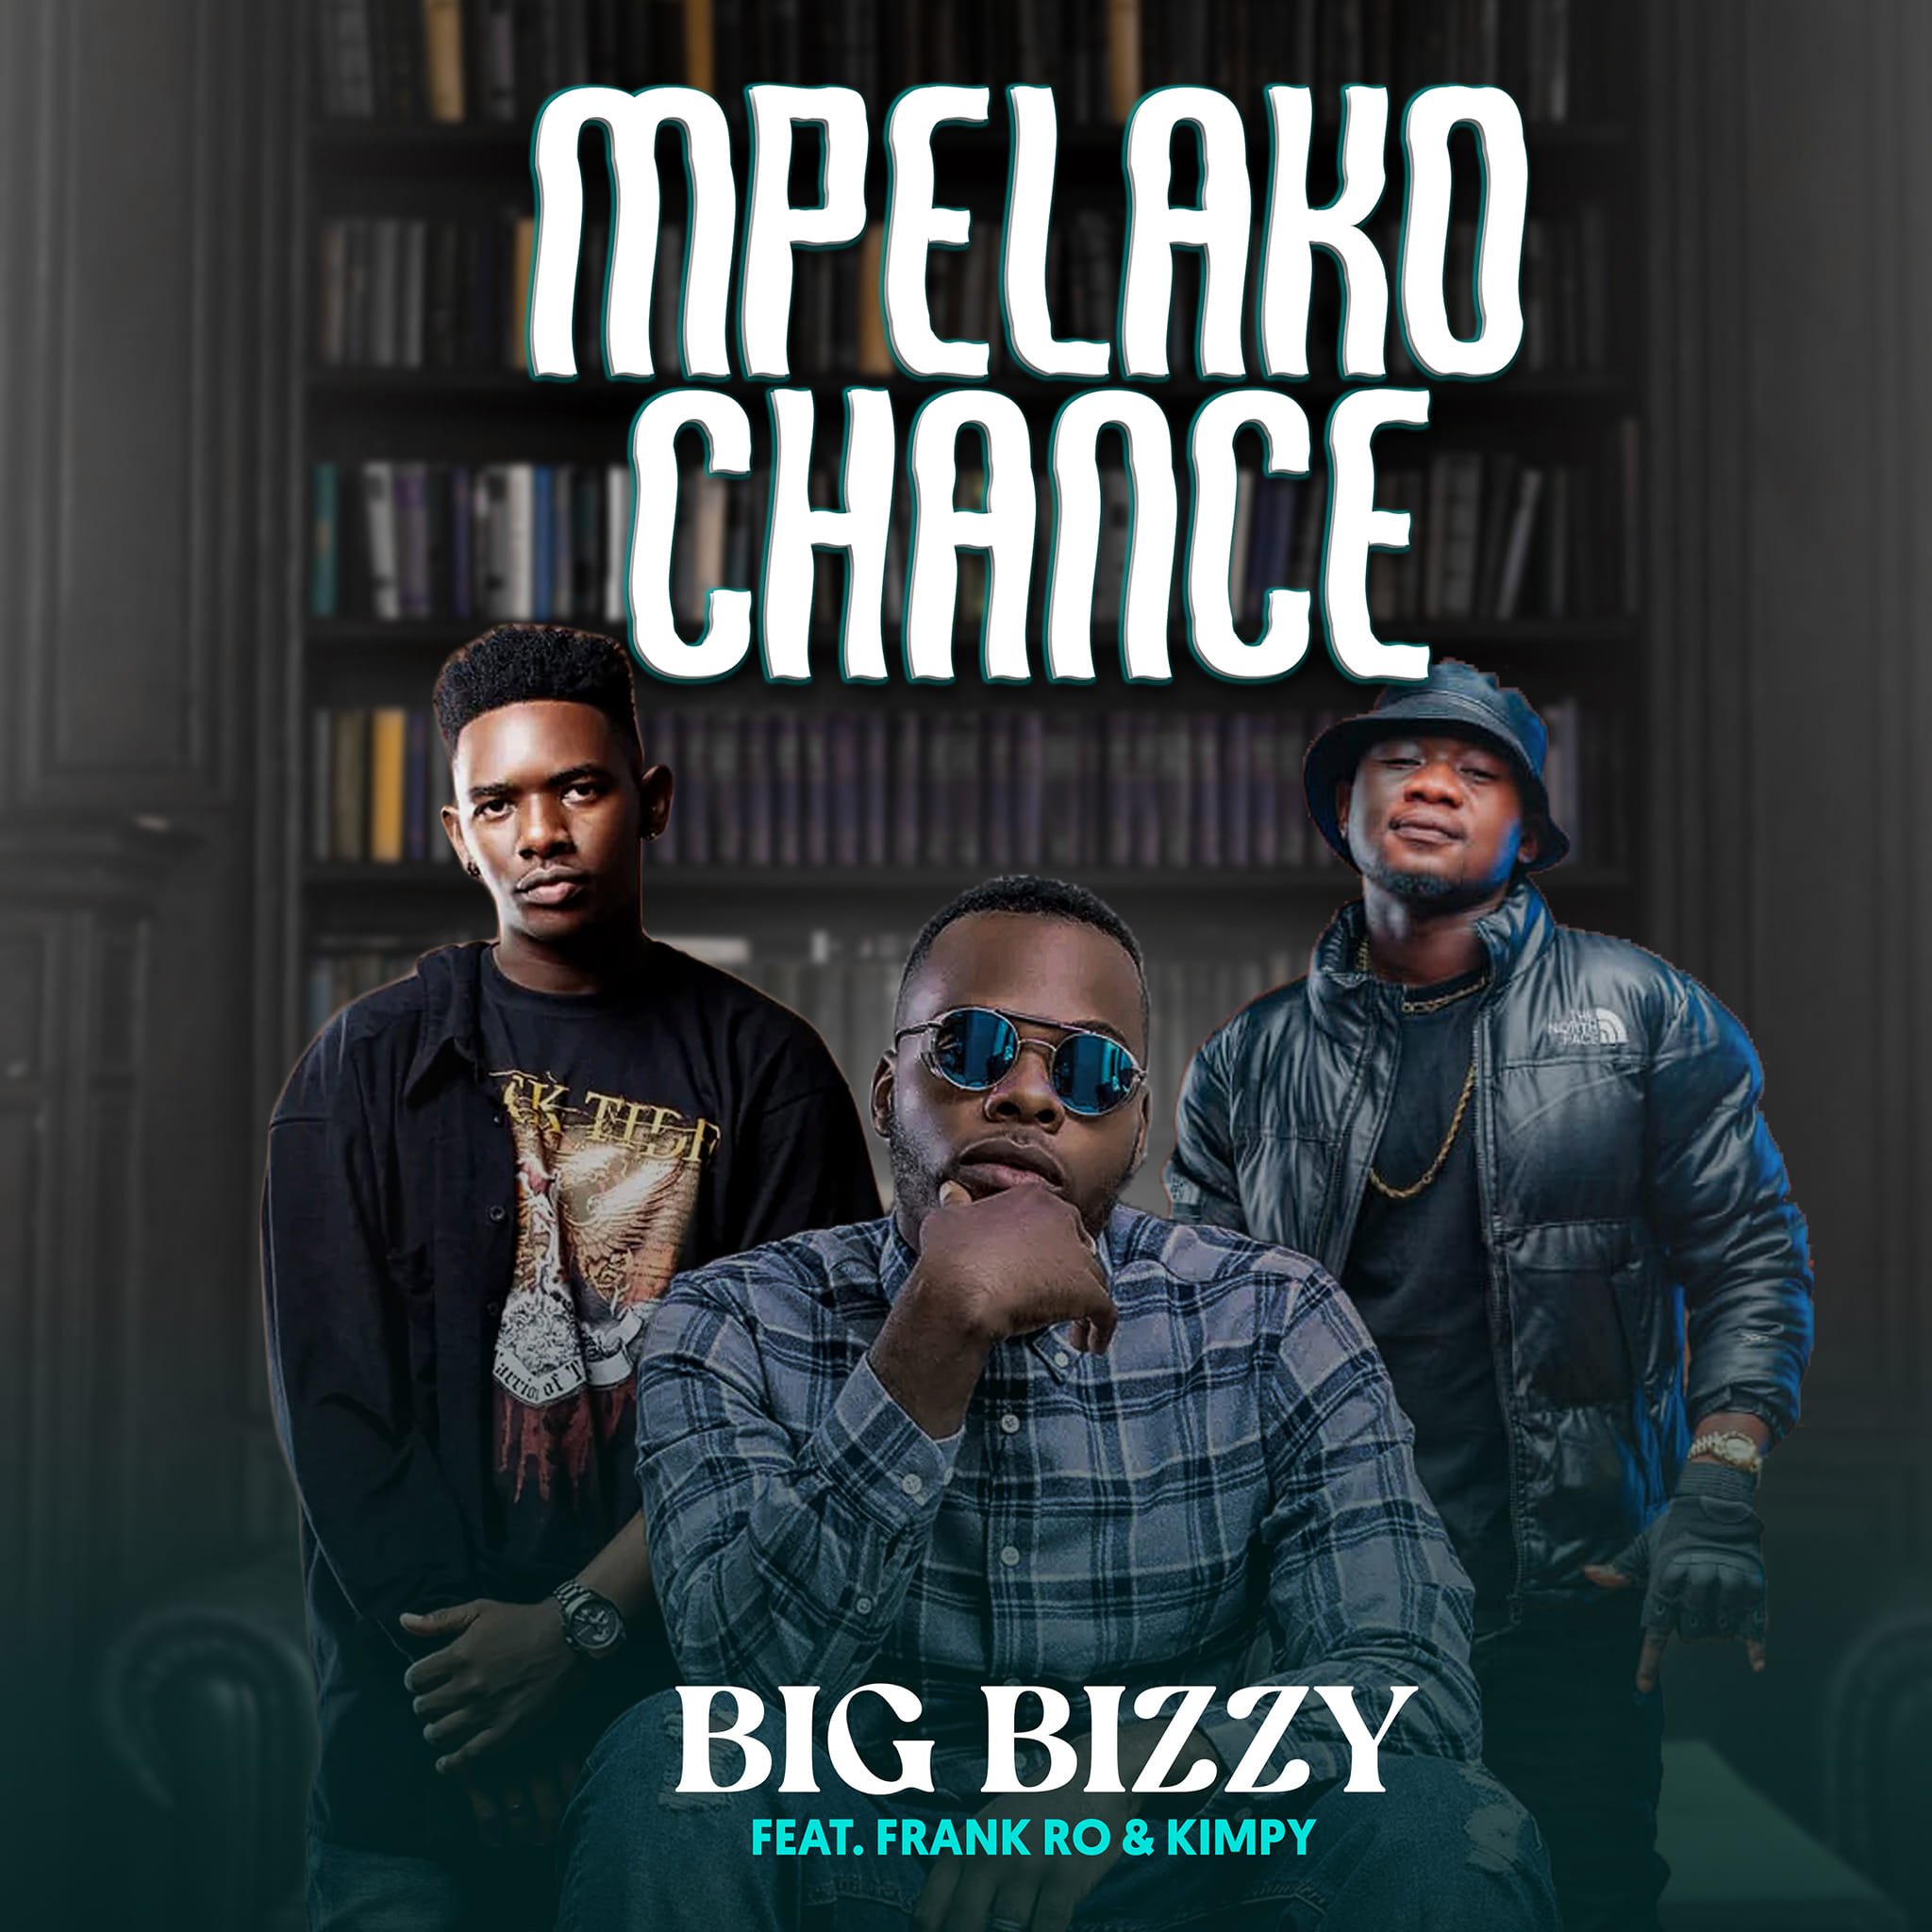 Big Bizzy Ft. Frank Ro Kimpy Zambia Mpelako Chance Audio